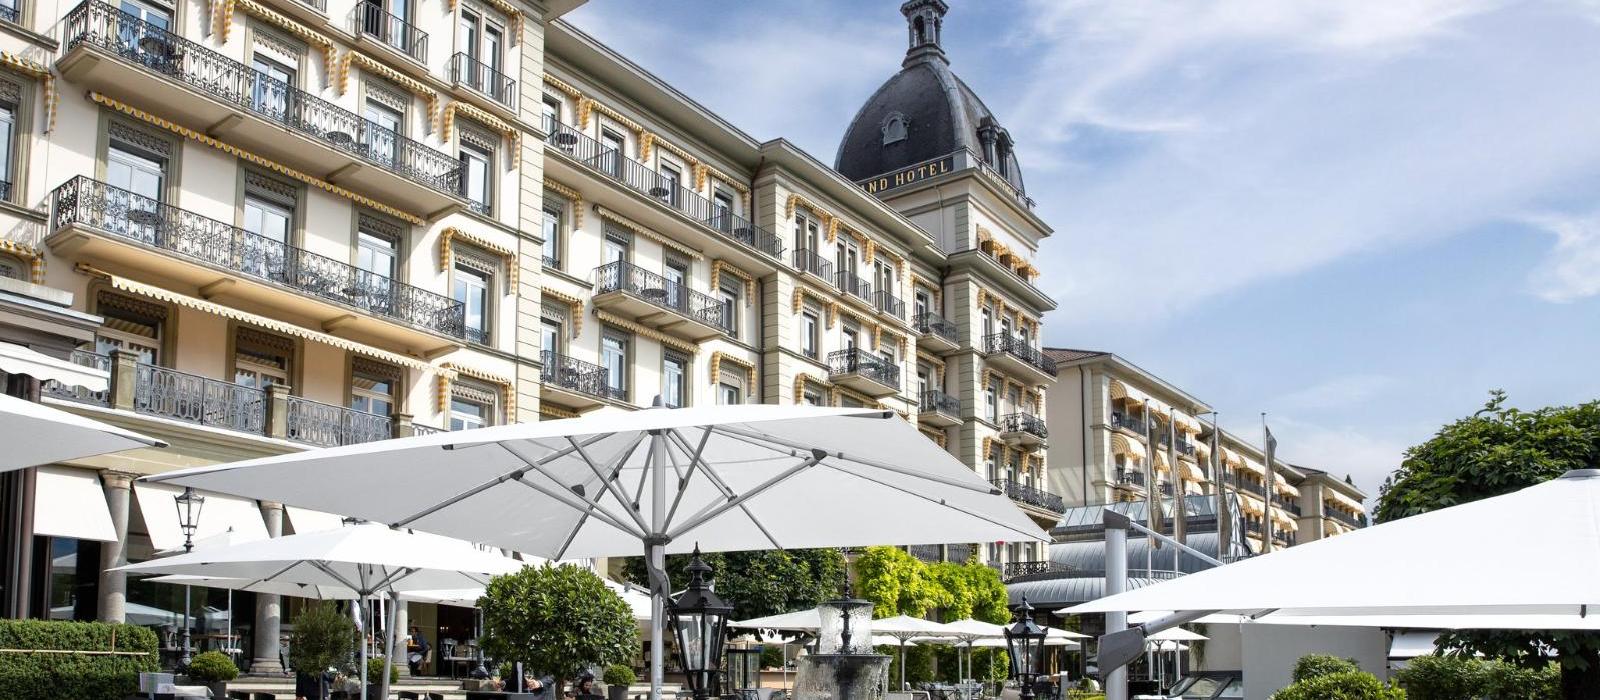 维多利亚少女峰山墅温泉酒店(Victoria-Jungfrau Grand Hotel & Spa) 图片  www.lhw.cn